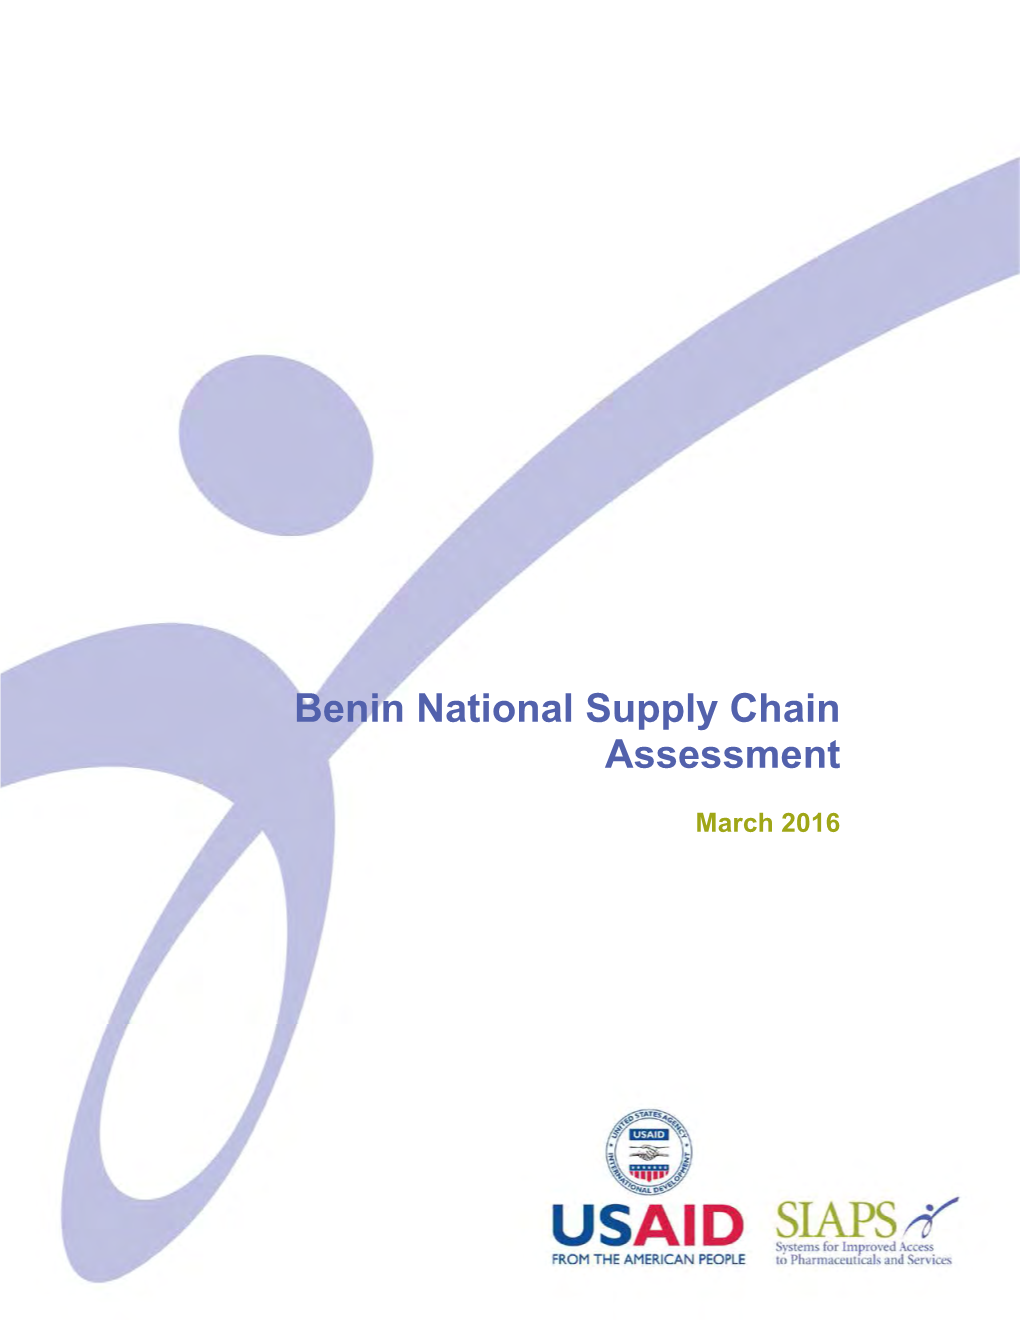 Benin National Supply Chain Assessment